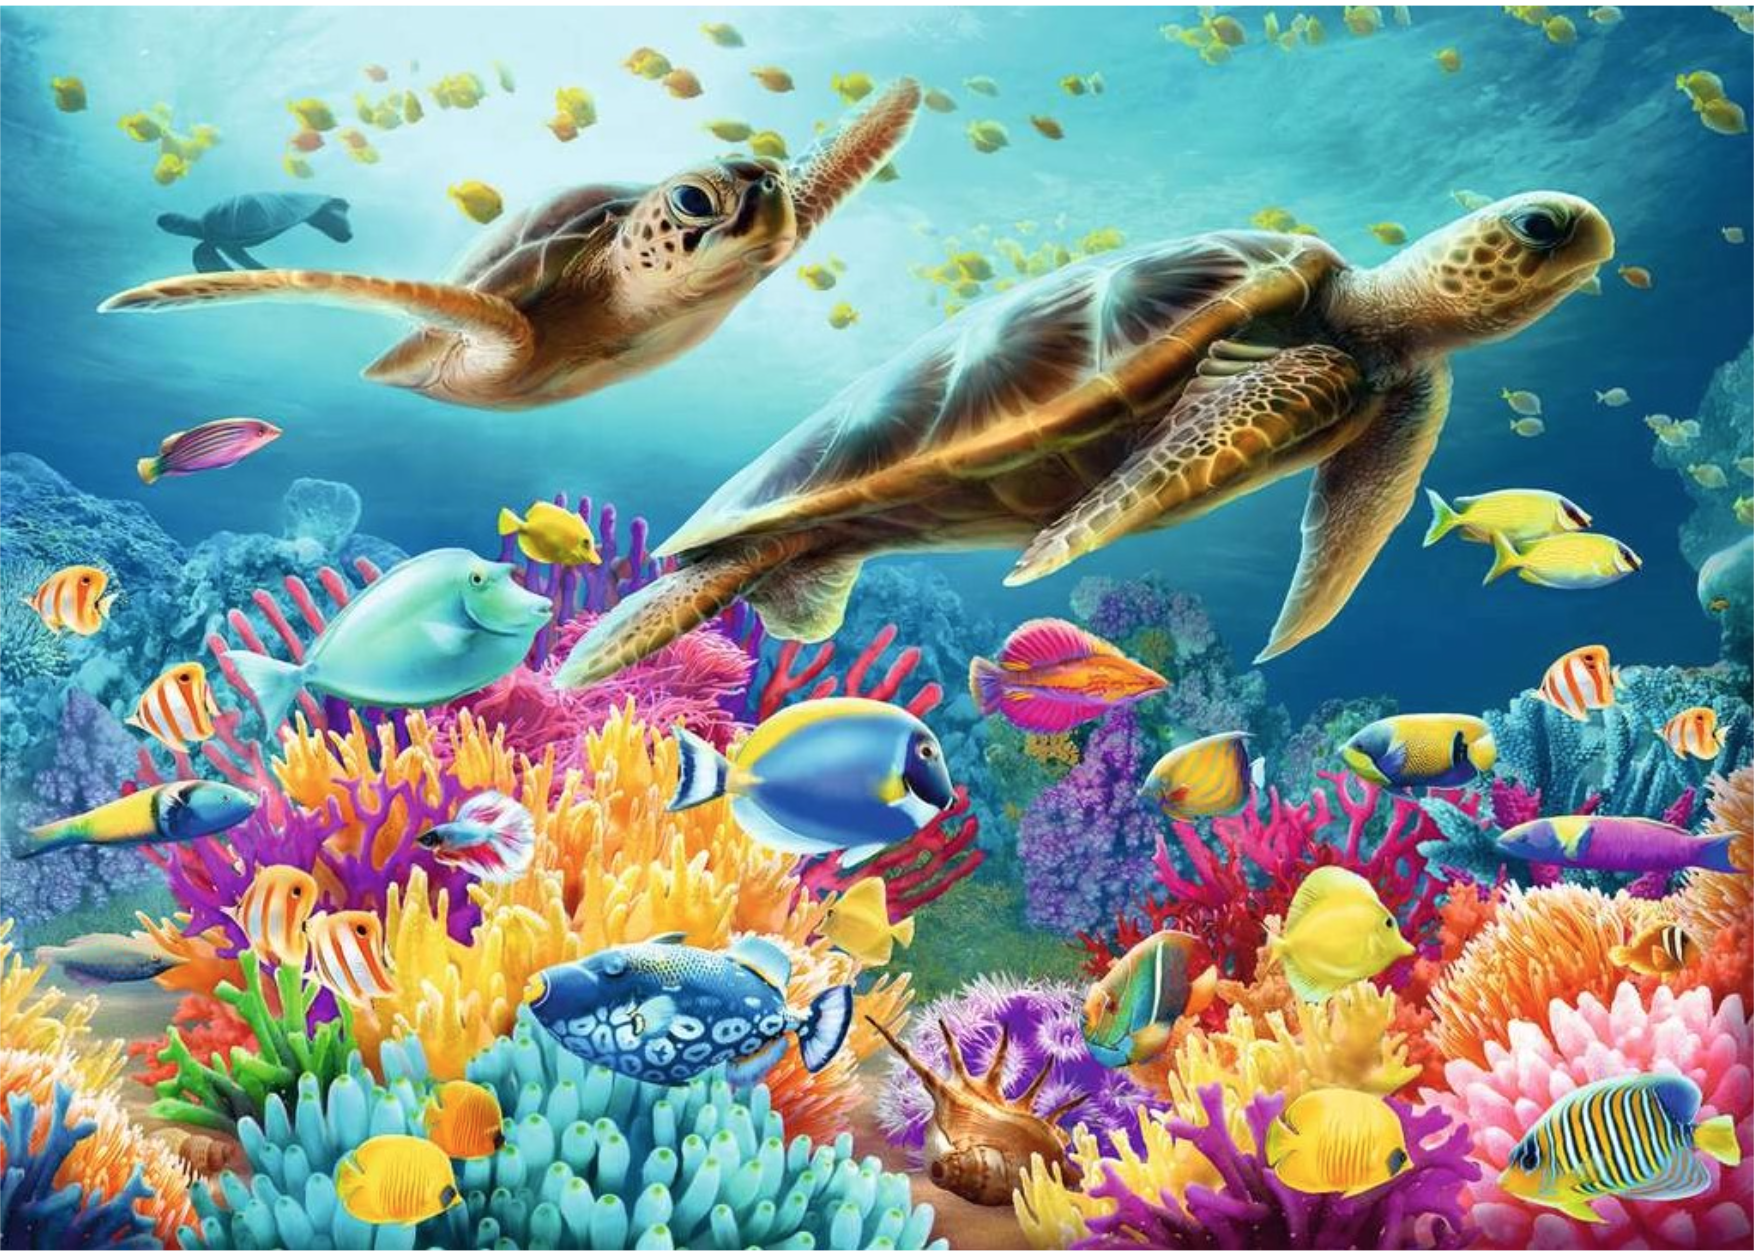 Puzzle Reef Turtle Ravensburger-16590 500 pièces Puzzles - Animaux marins -  /Planet'Puzzles